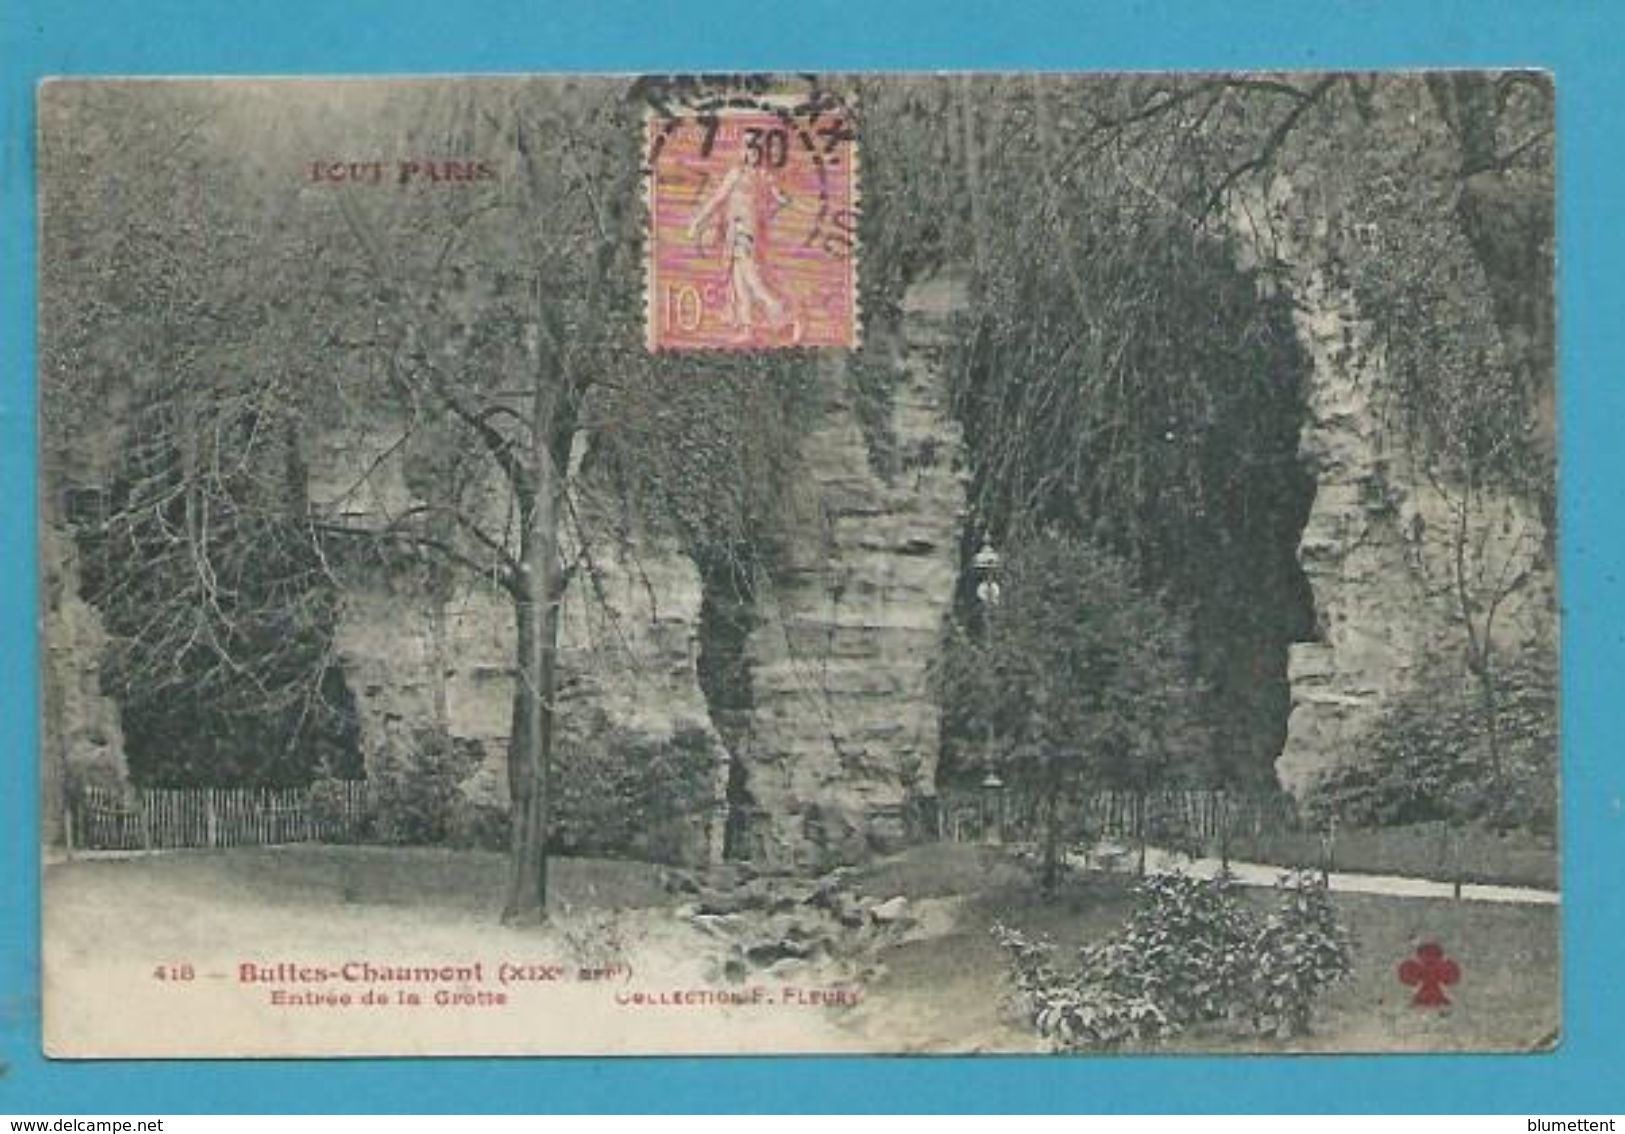 CPA TOUT PARIS 418 - Buttes Chaumont Entrée De La Grotte (XIXème Arrt.) Ed. FLEURY - Arrondissement: 19